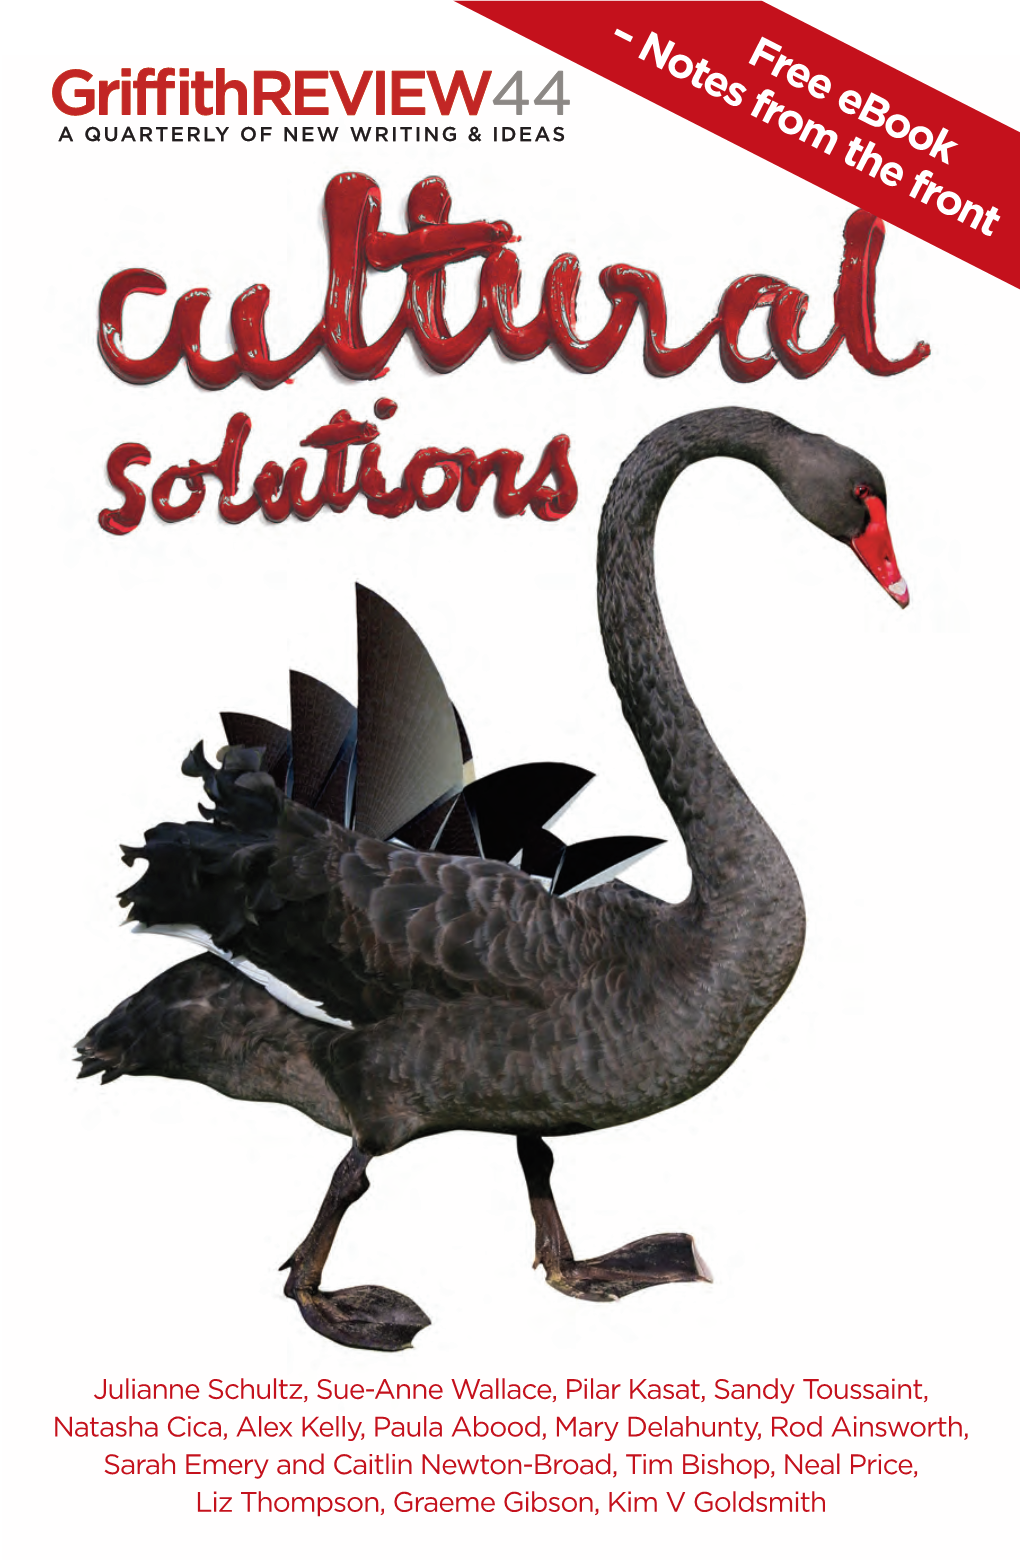 Cultural Solutions